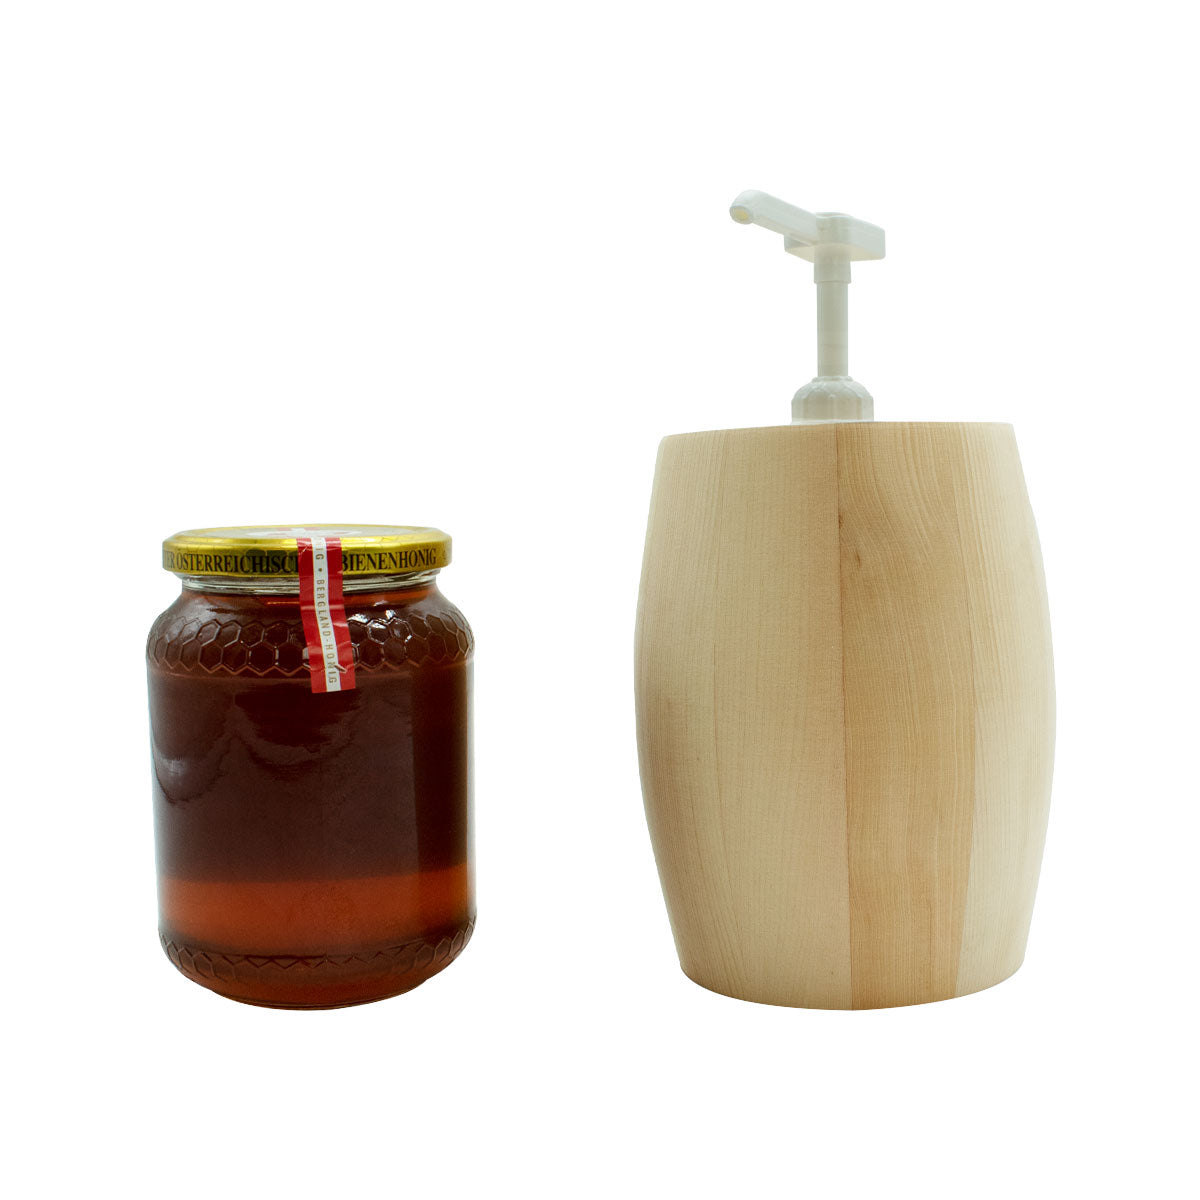 Einzigartiger 4-teiliger Honigspender aus Alpen Zirbenholz für verschiedene Honig-Glas-Größen und tropffreiem Spender